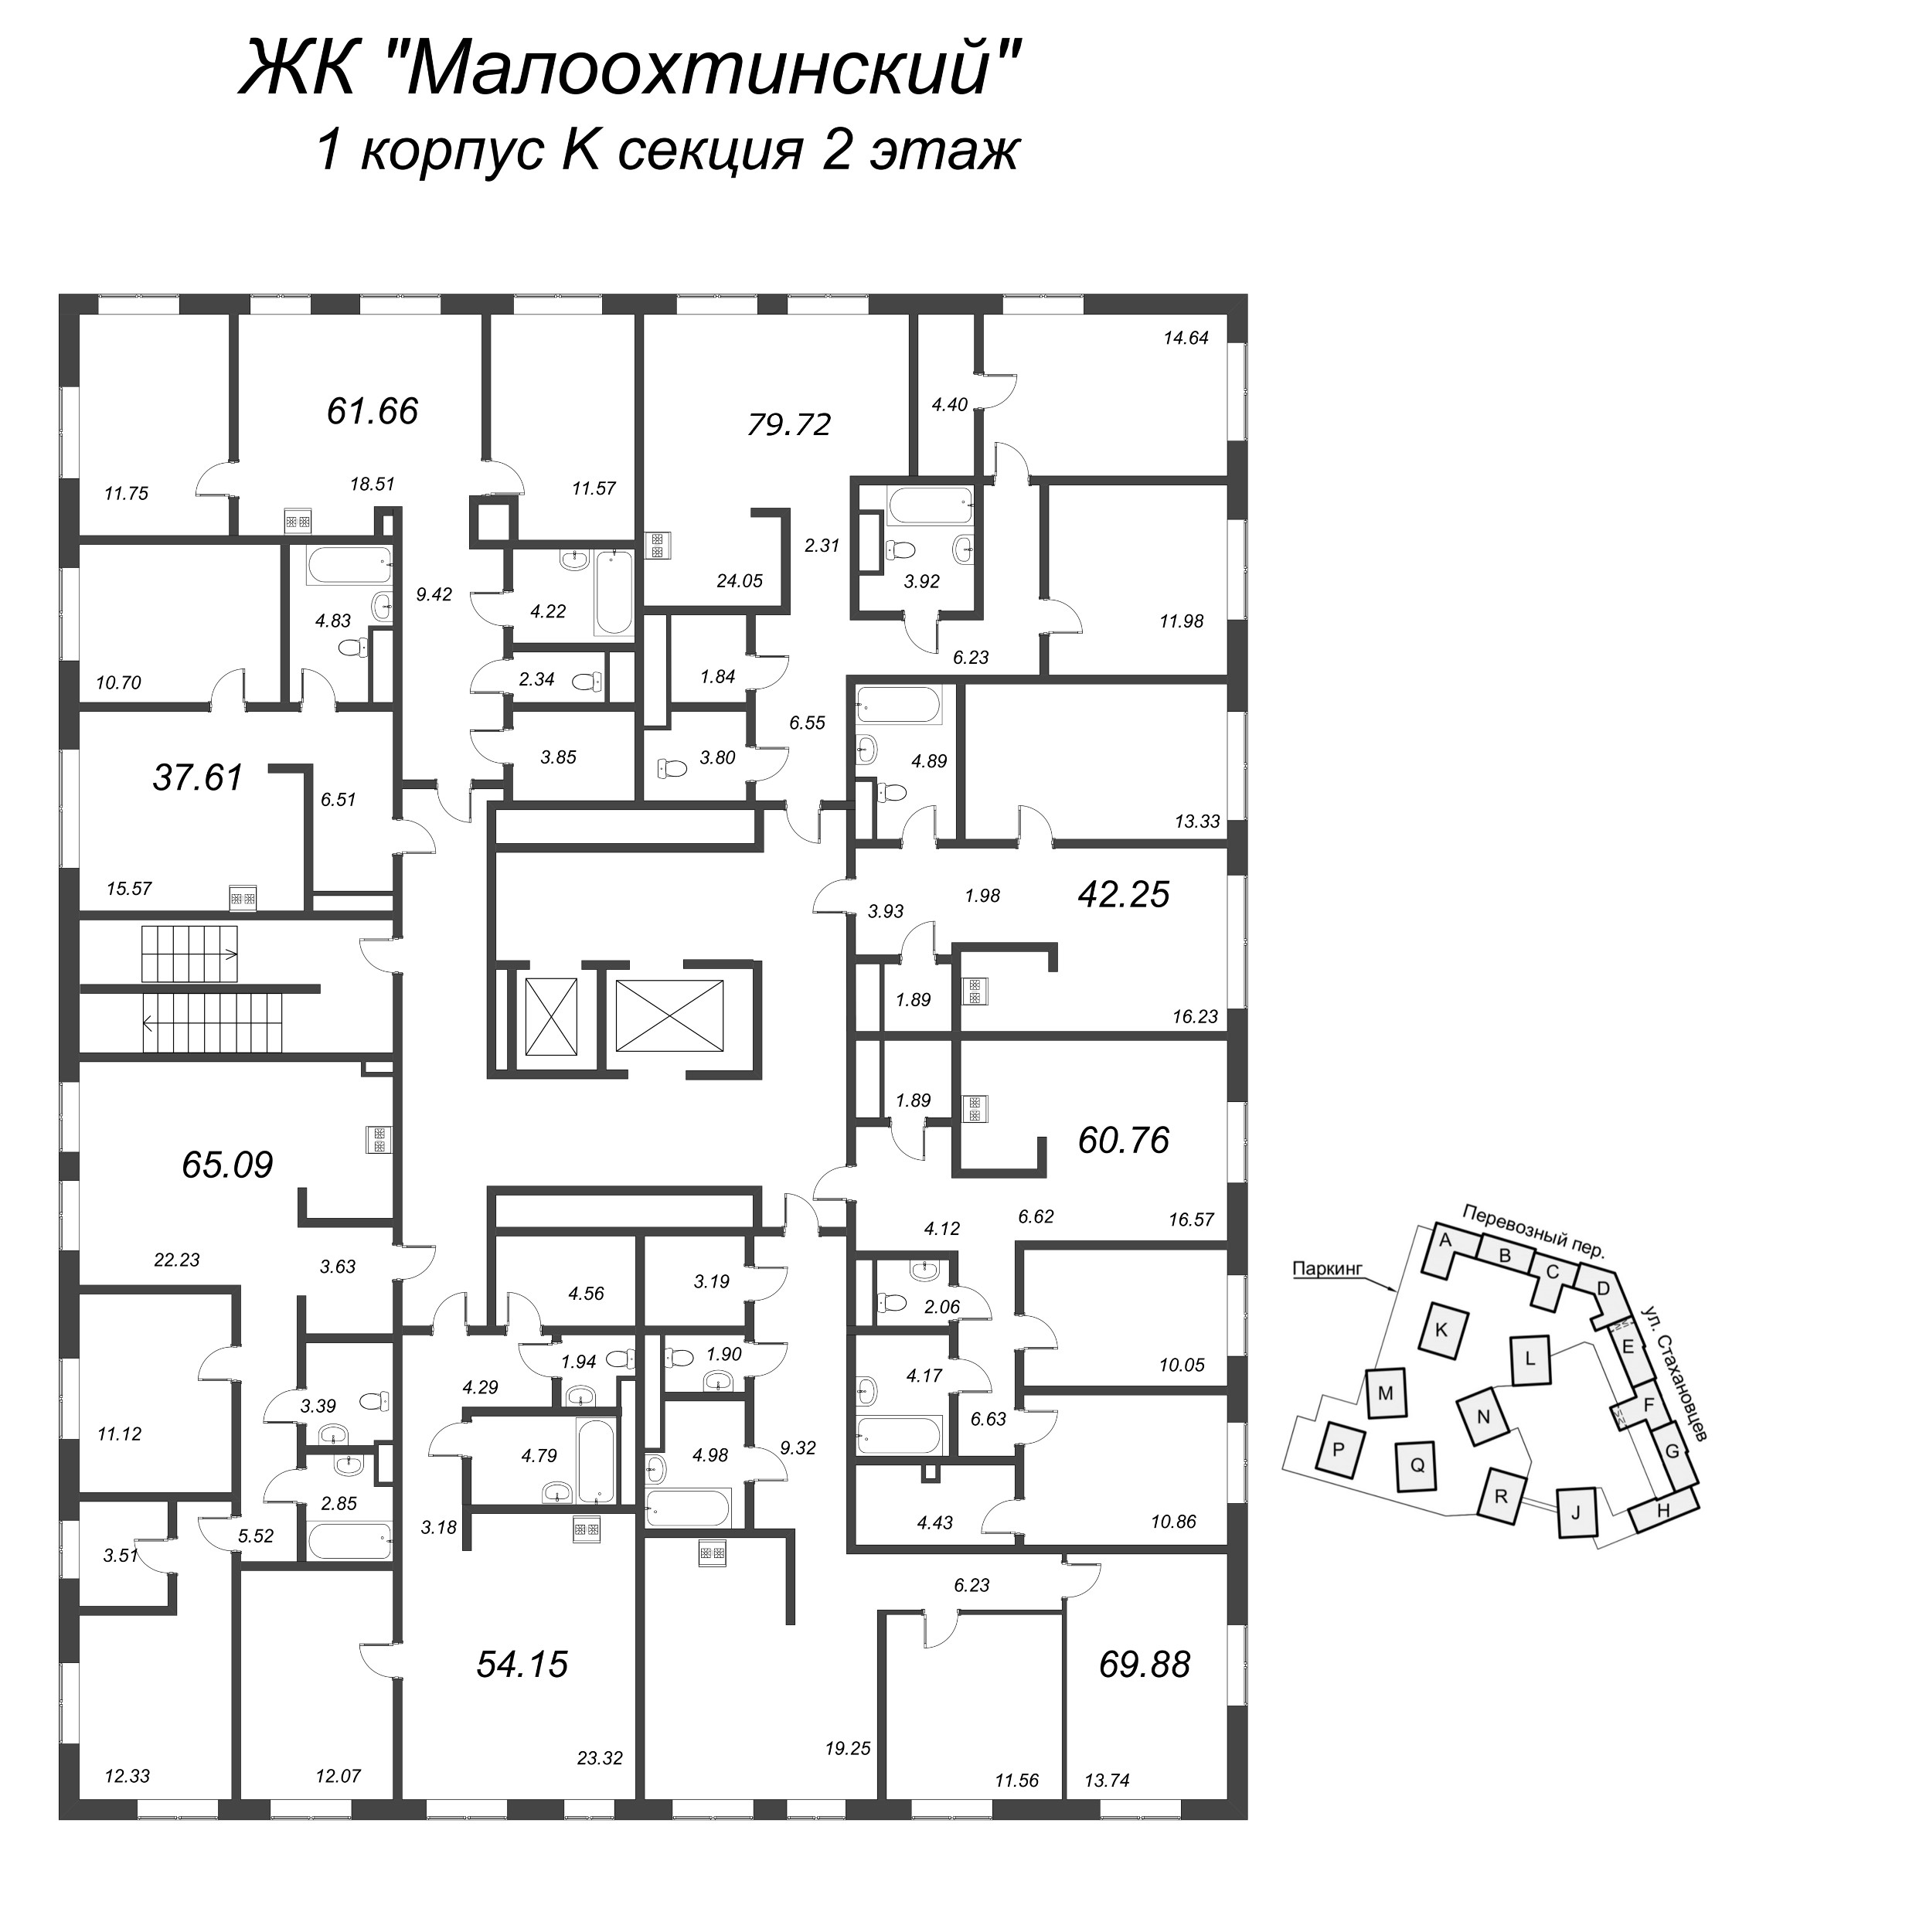 3-комнатная (Евро) квартира, 73.3 м² в ЖК "Малоохтинский, 68" - планировка этажа